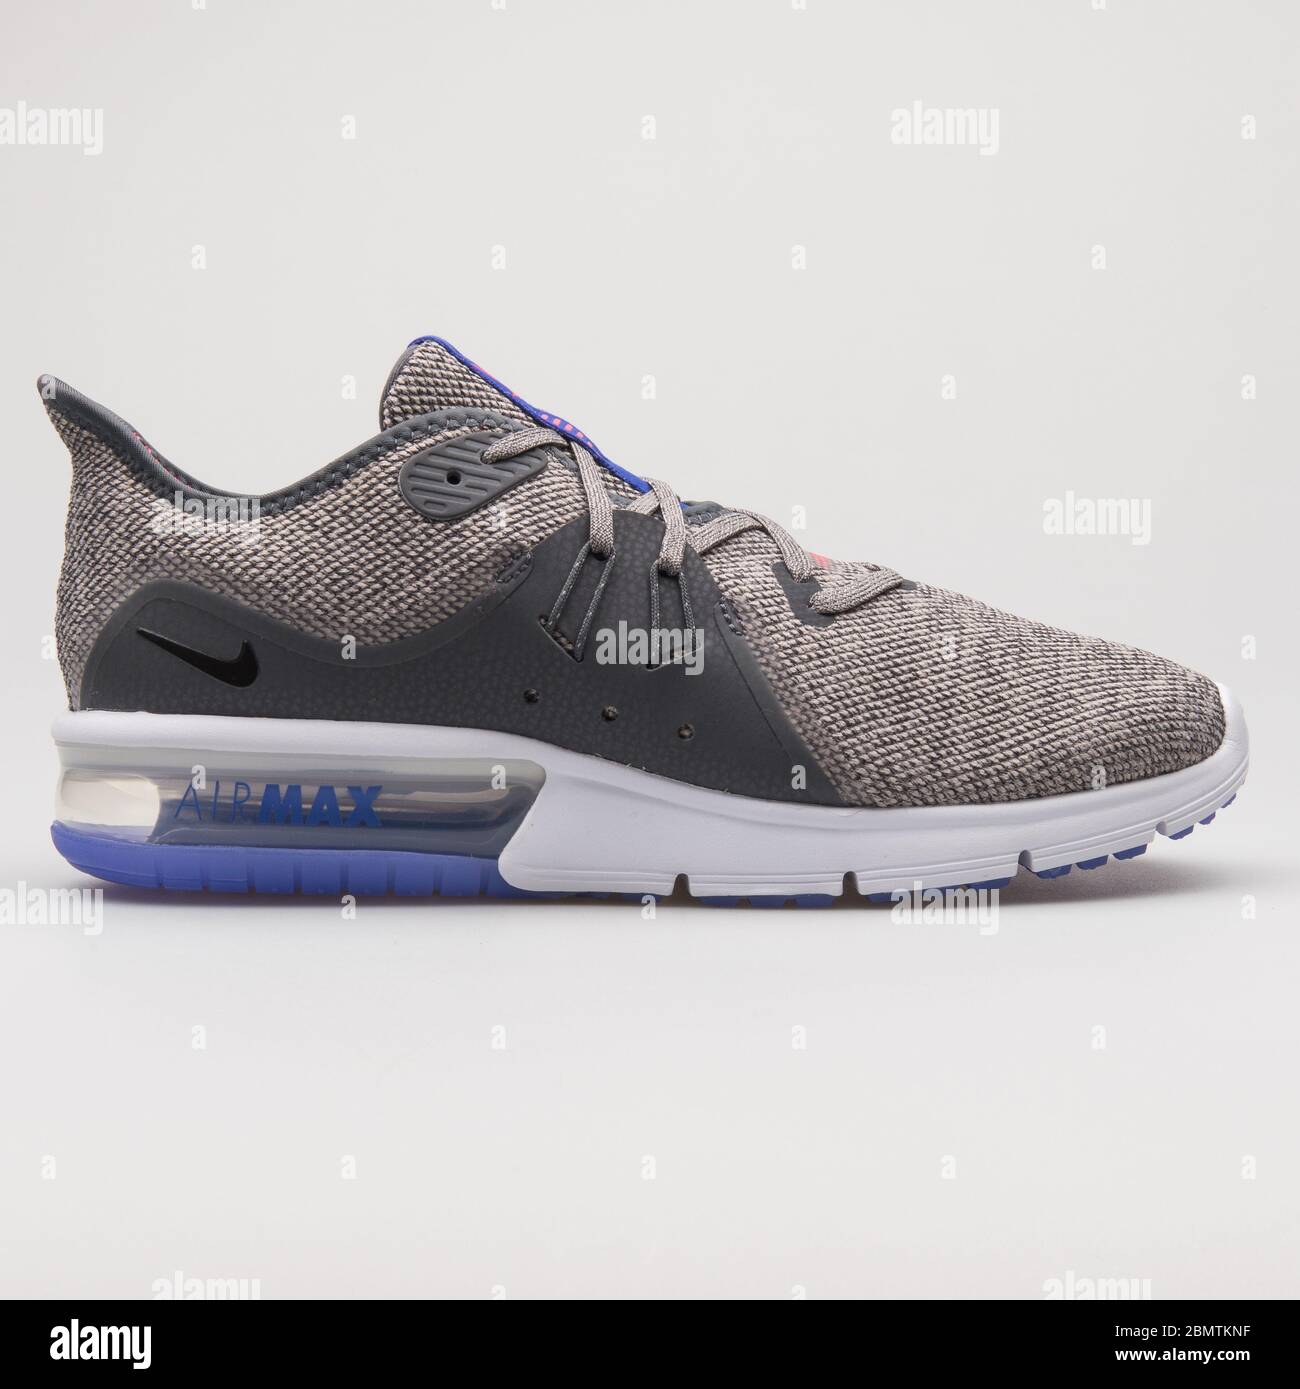 VIENA, AUSTRIA - 19 DE de 2018: Nike Air Max Sequent 3 sneakers grises, negras y azules sobre fondo blanco Fotografía de - Alamy